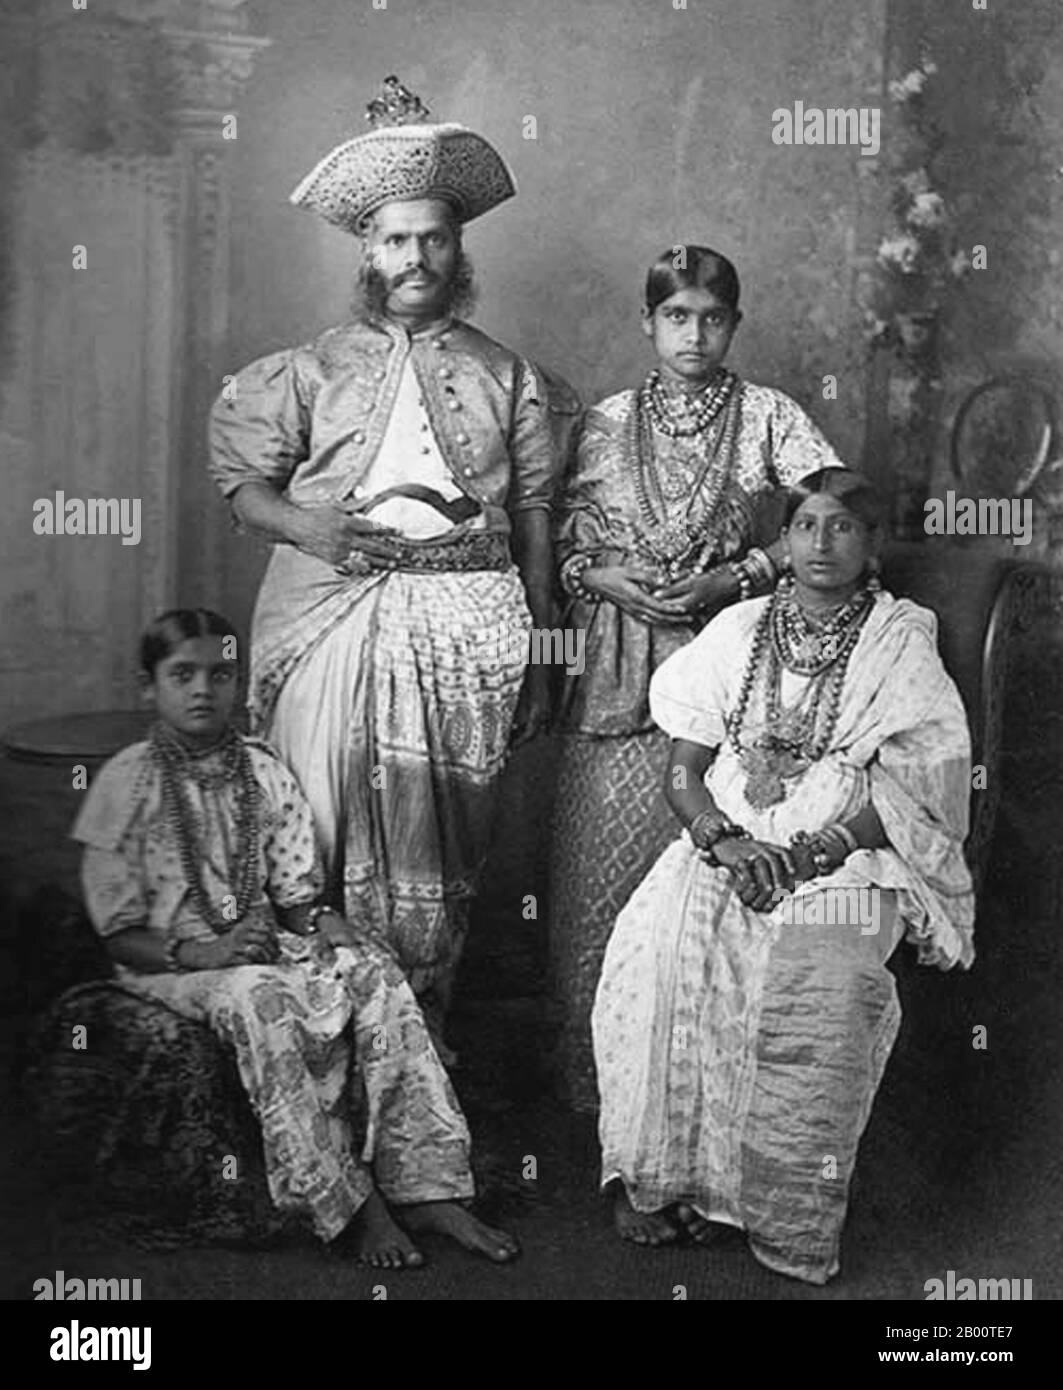 Sri Lanka: Ritratto di una famiglia aristocratica singalese di Kandy. Foto di Charles T. Scowen (1852-1948), 1880 s. Nel 1592 Kandy divenne la capitale dell'ultimo regno indipendente rimasto nello Sri Lanka dopo che le regioni costiere erano state conquistate dai portoghesi. Kandy rimase indipendente fino all'inizio del XIX secolo. Nella seconda guerra del Kandyan, gli inglesi non incontrarono resistenza e raggiunsero la città il 10 febbraio 1815. Il 2 marzo 1815 fu firmato un trattato noto come Convenzione di Kandyan tra gli inglesi e i Radalas (aristocratici di Kandyan), che fecero di Kandy un protettorato britannico. Foto Stock